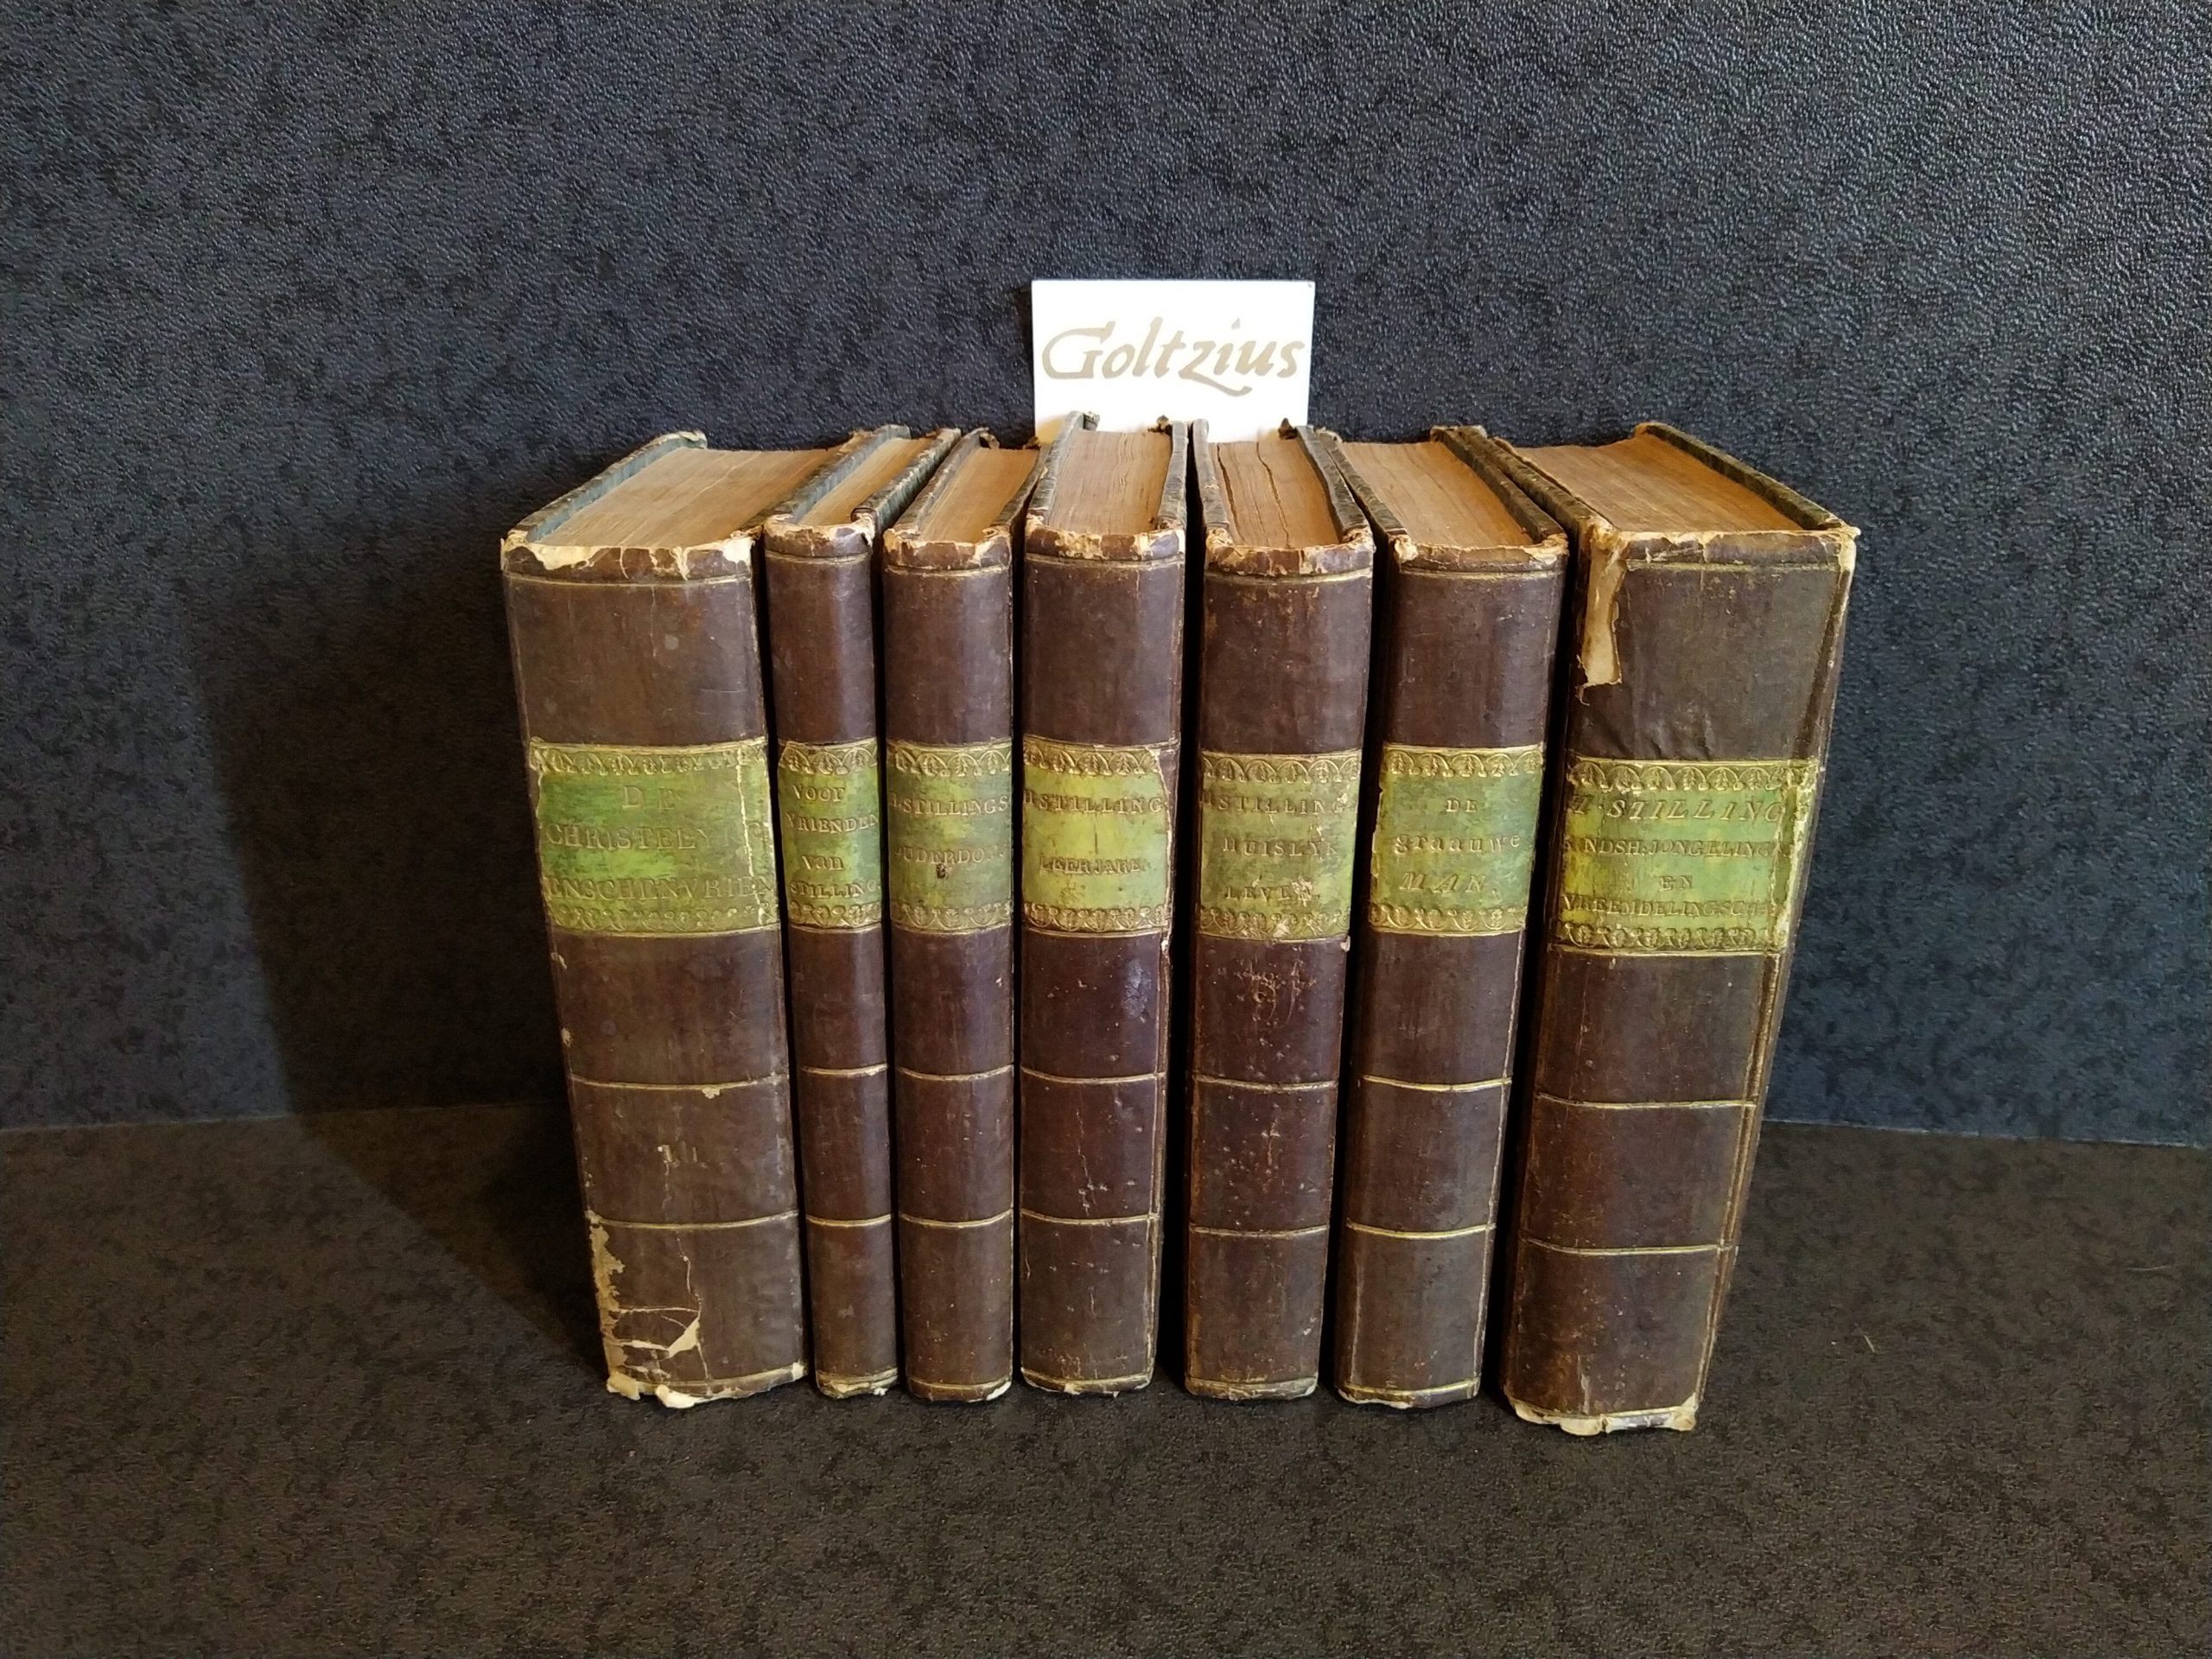 STILLING, HENDRIK, Lovely set of 7 books concerning Hendrik Stilling, including: Hendrik Stillings Huislijk Leven, Leerjaren, Ouderdom and De Grauwe Man